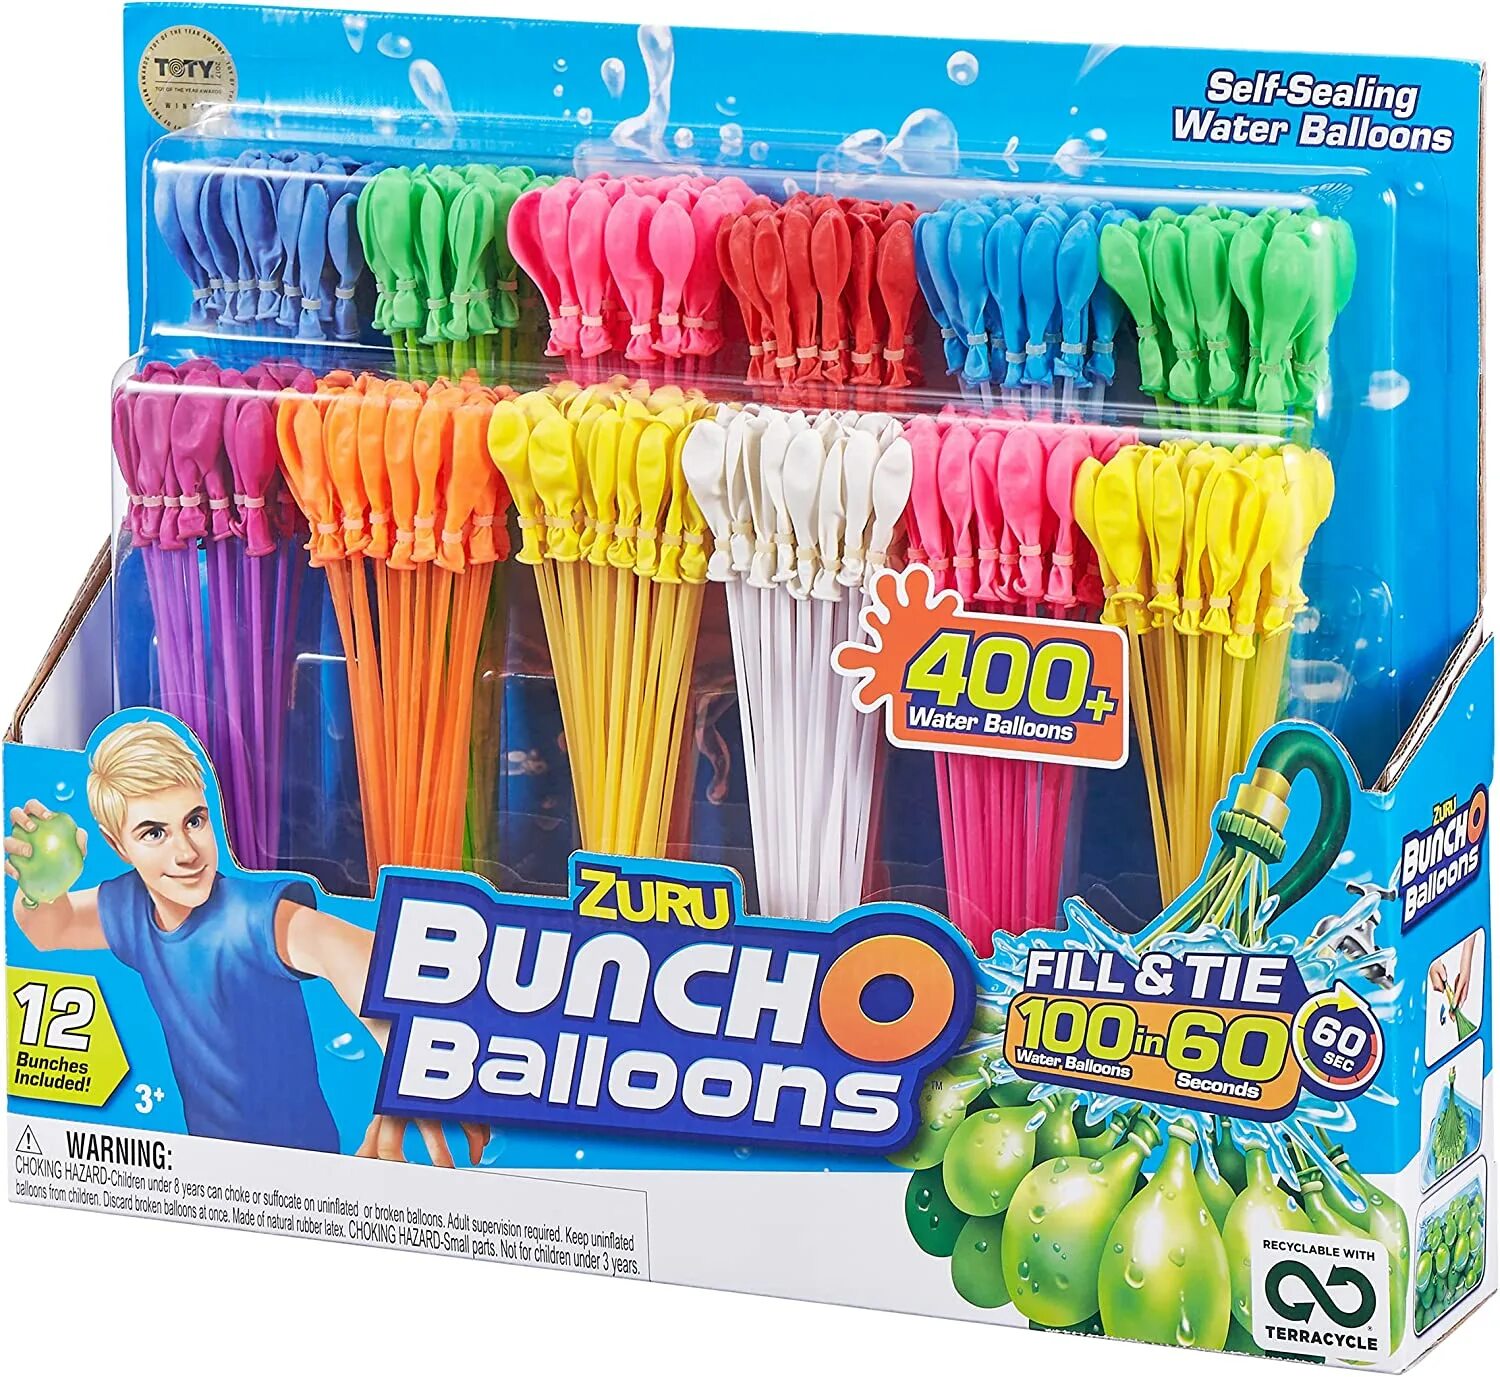 Банчо. Водяные бомбочки bunch Balloons. Buncho Balloons Водный Zuru. Водяная бомба шарика.